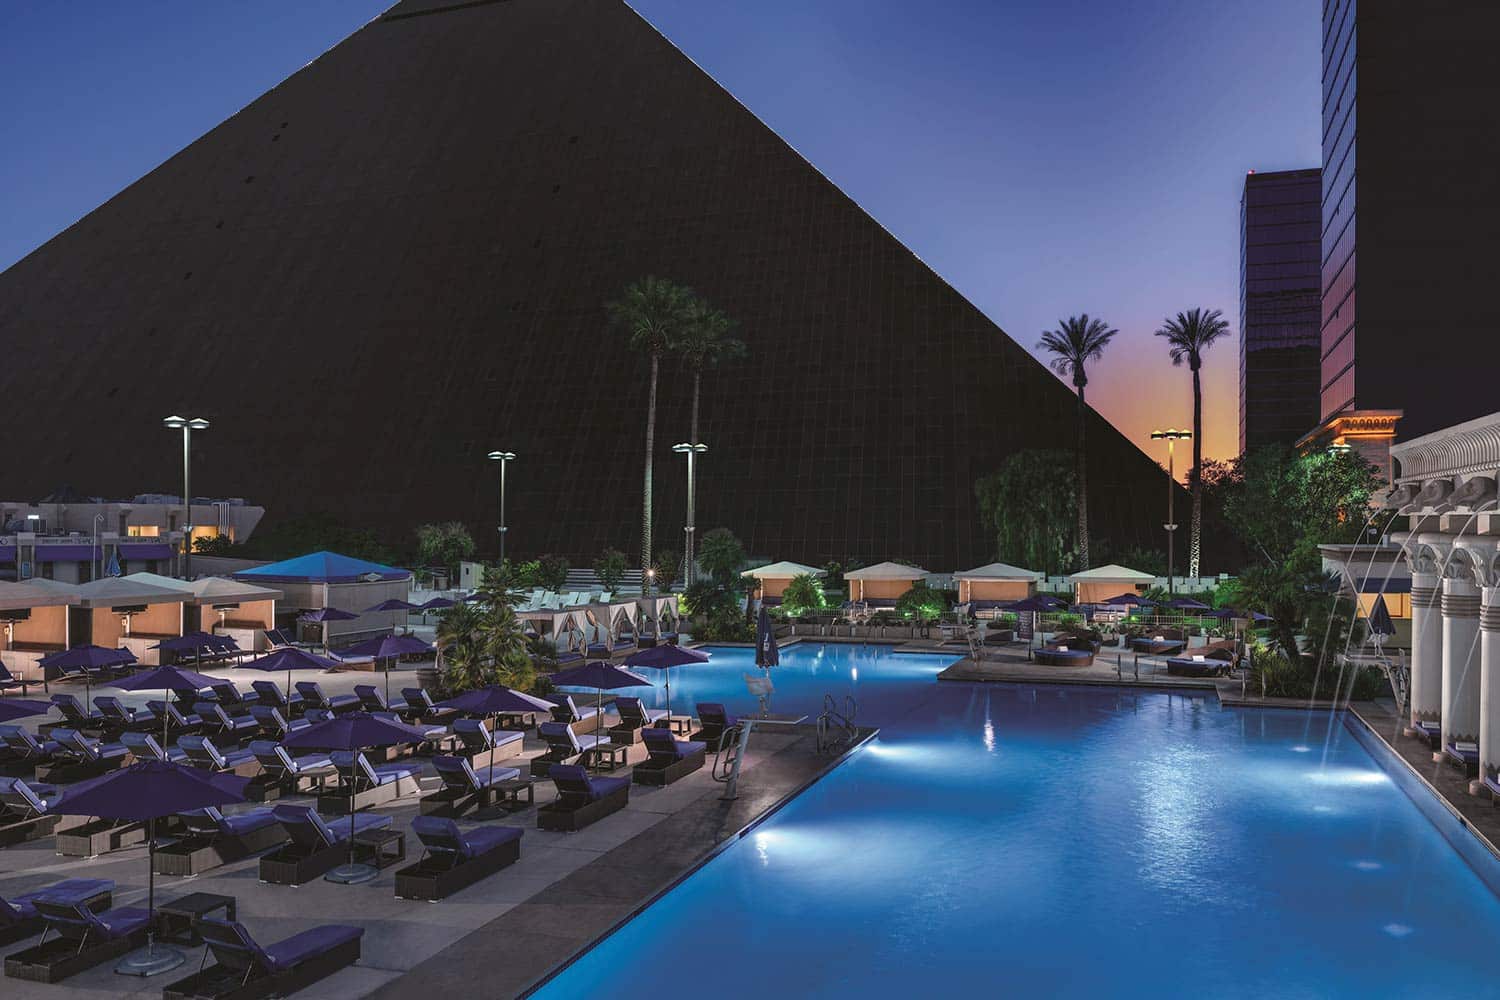 Luxor Las Vegas, 44572 Reviews